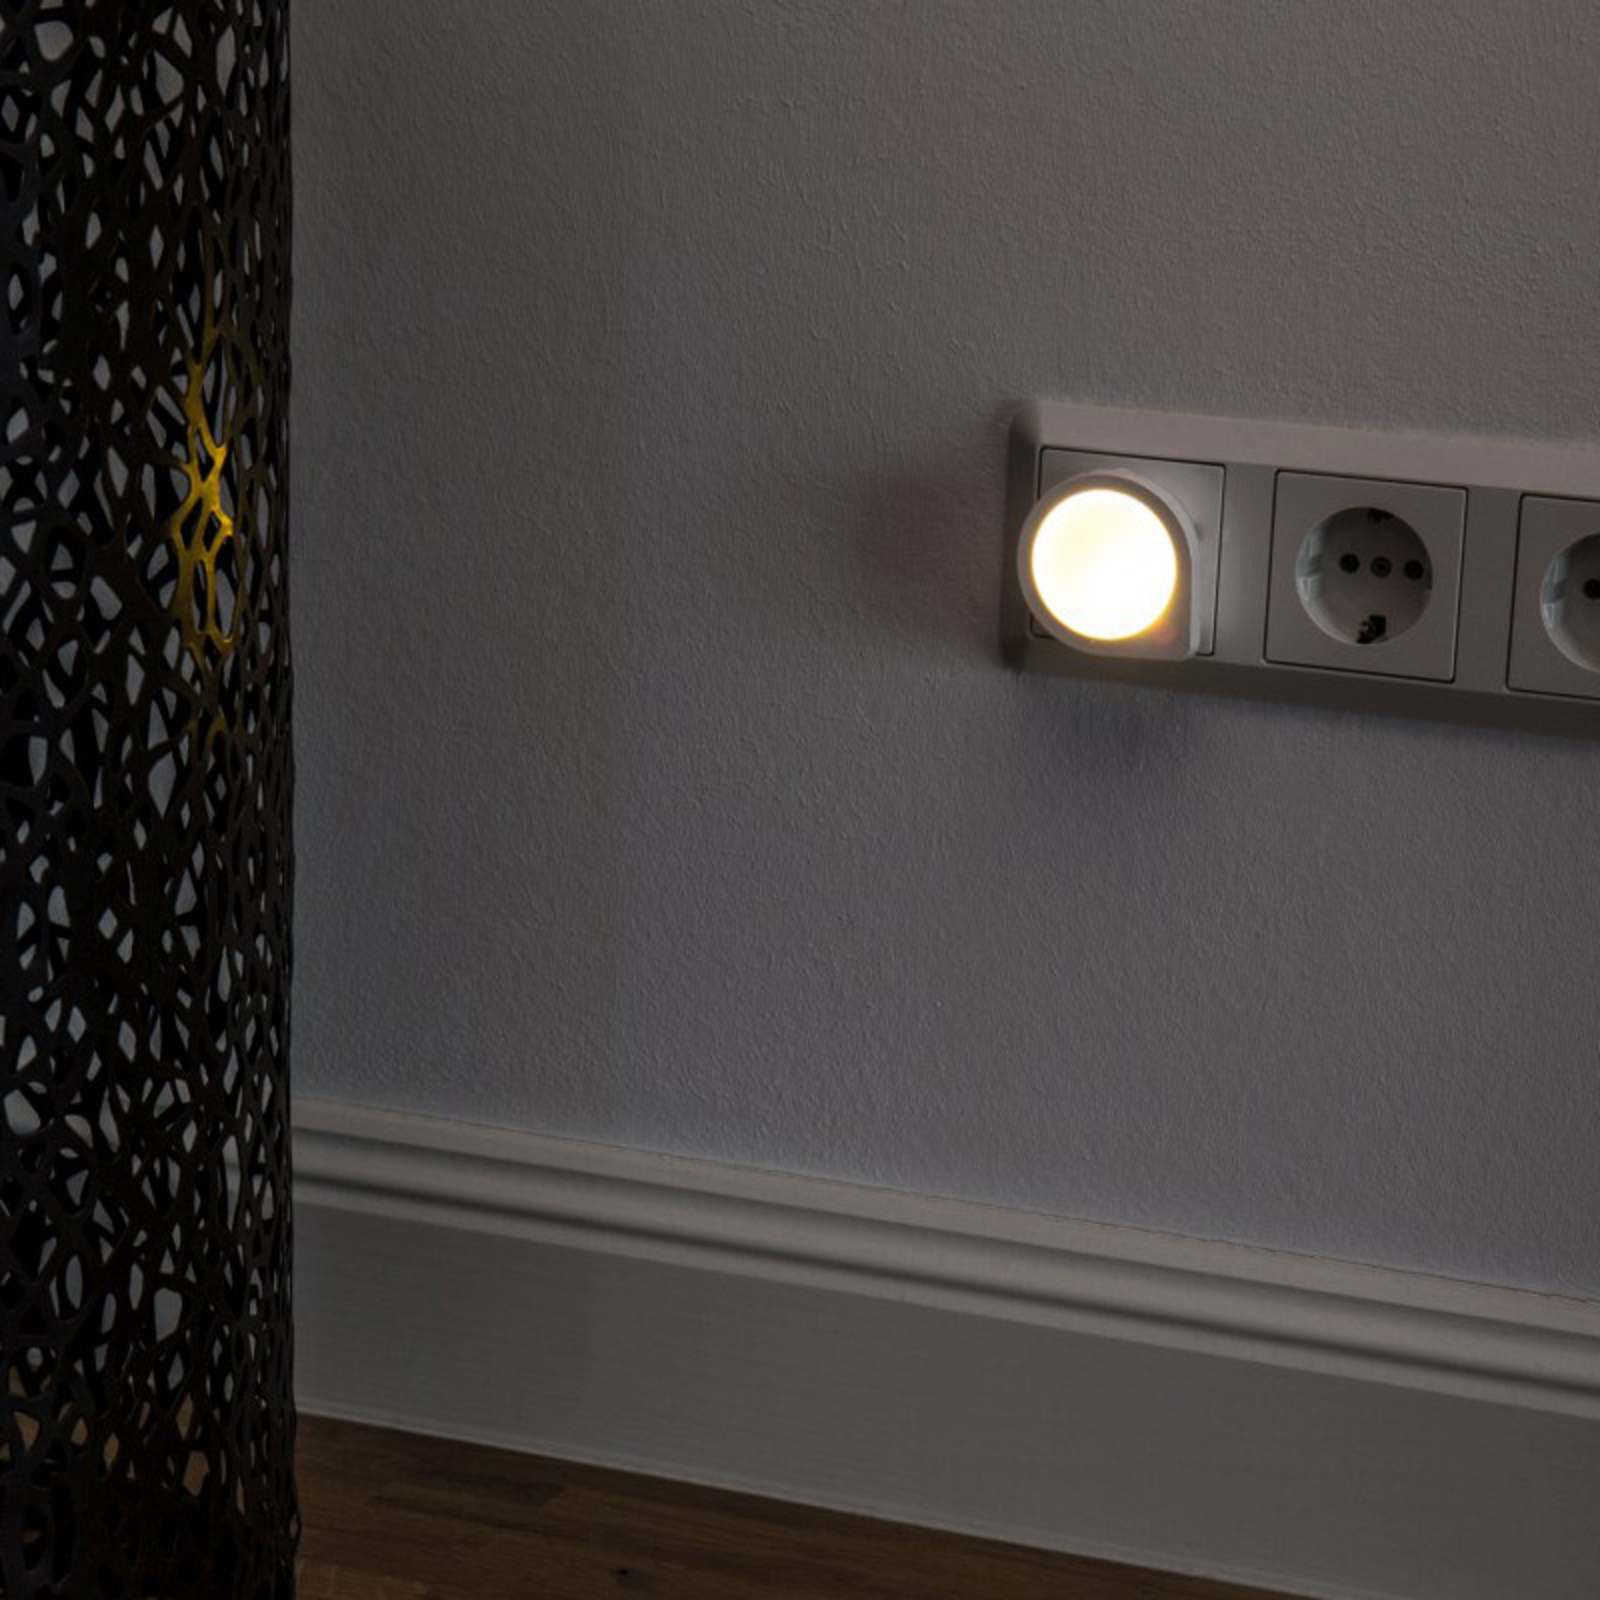 LED-stickkontaktlampa nattlampa Luna Sensor